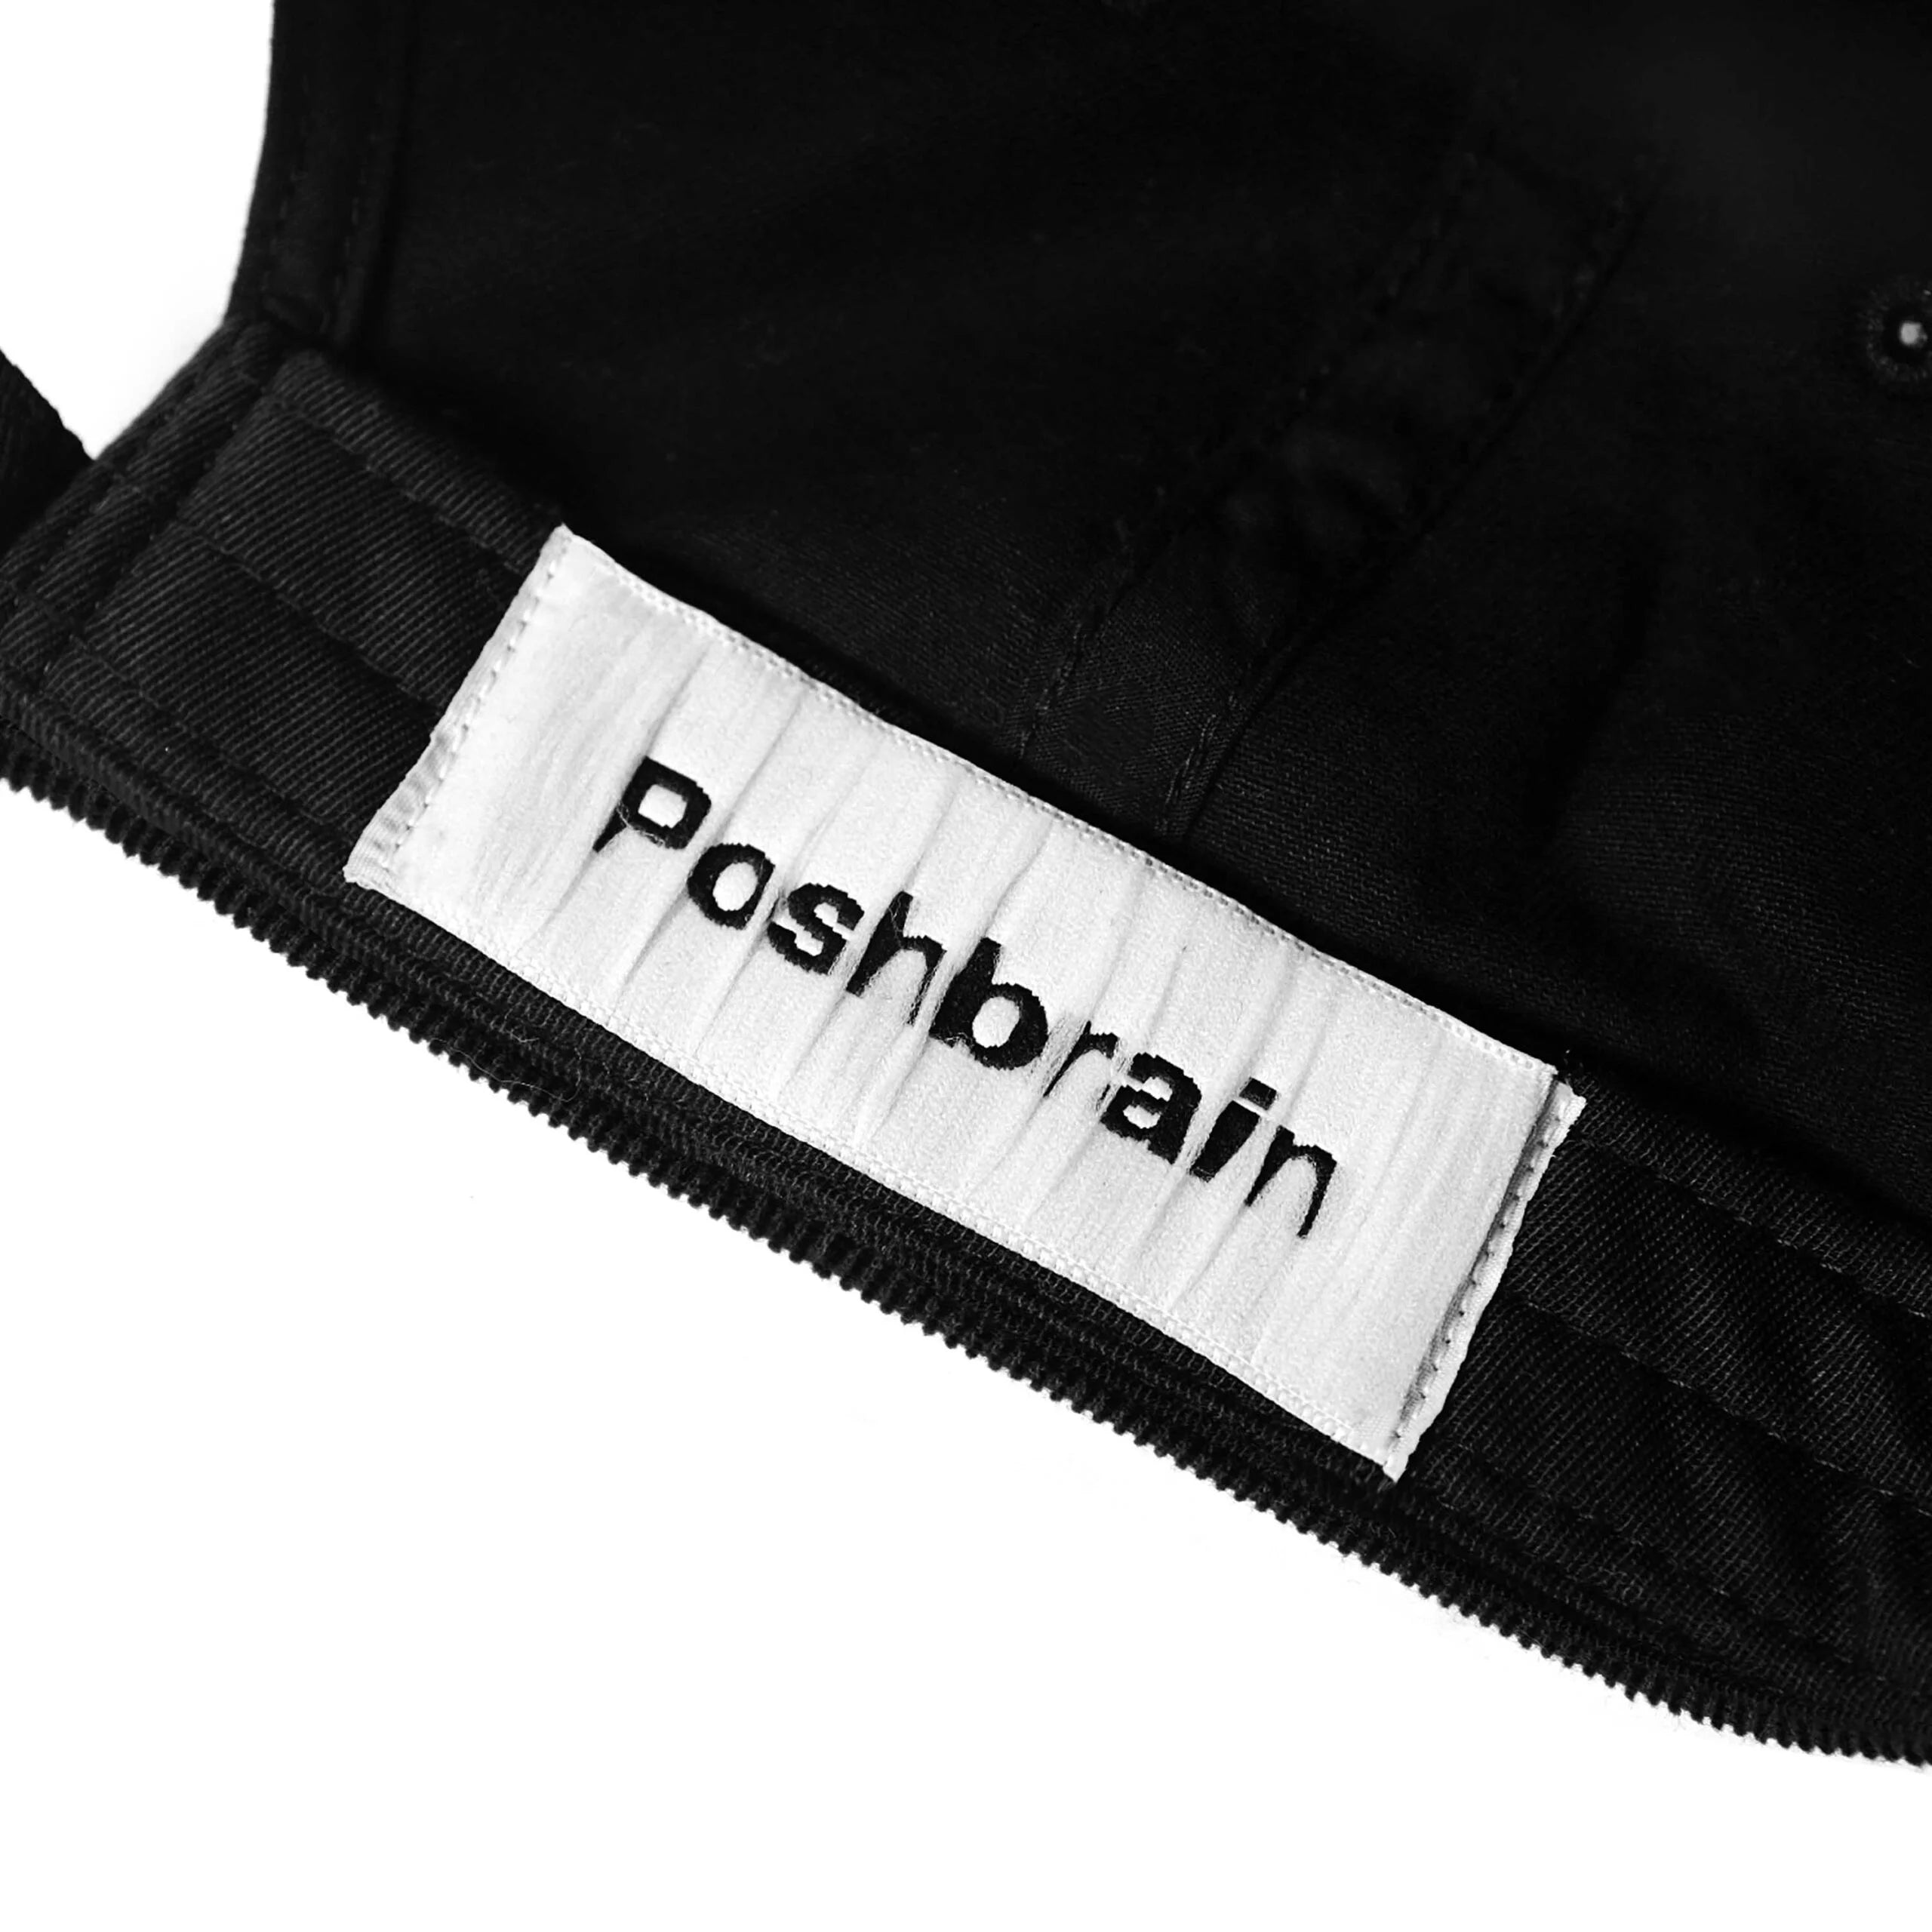 POSHBRAIN Powder Cap - Black